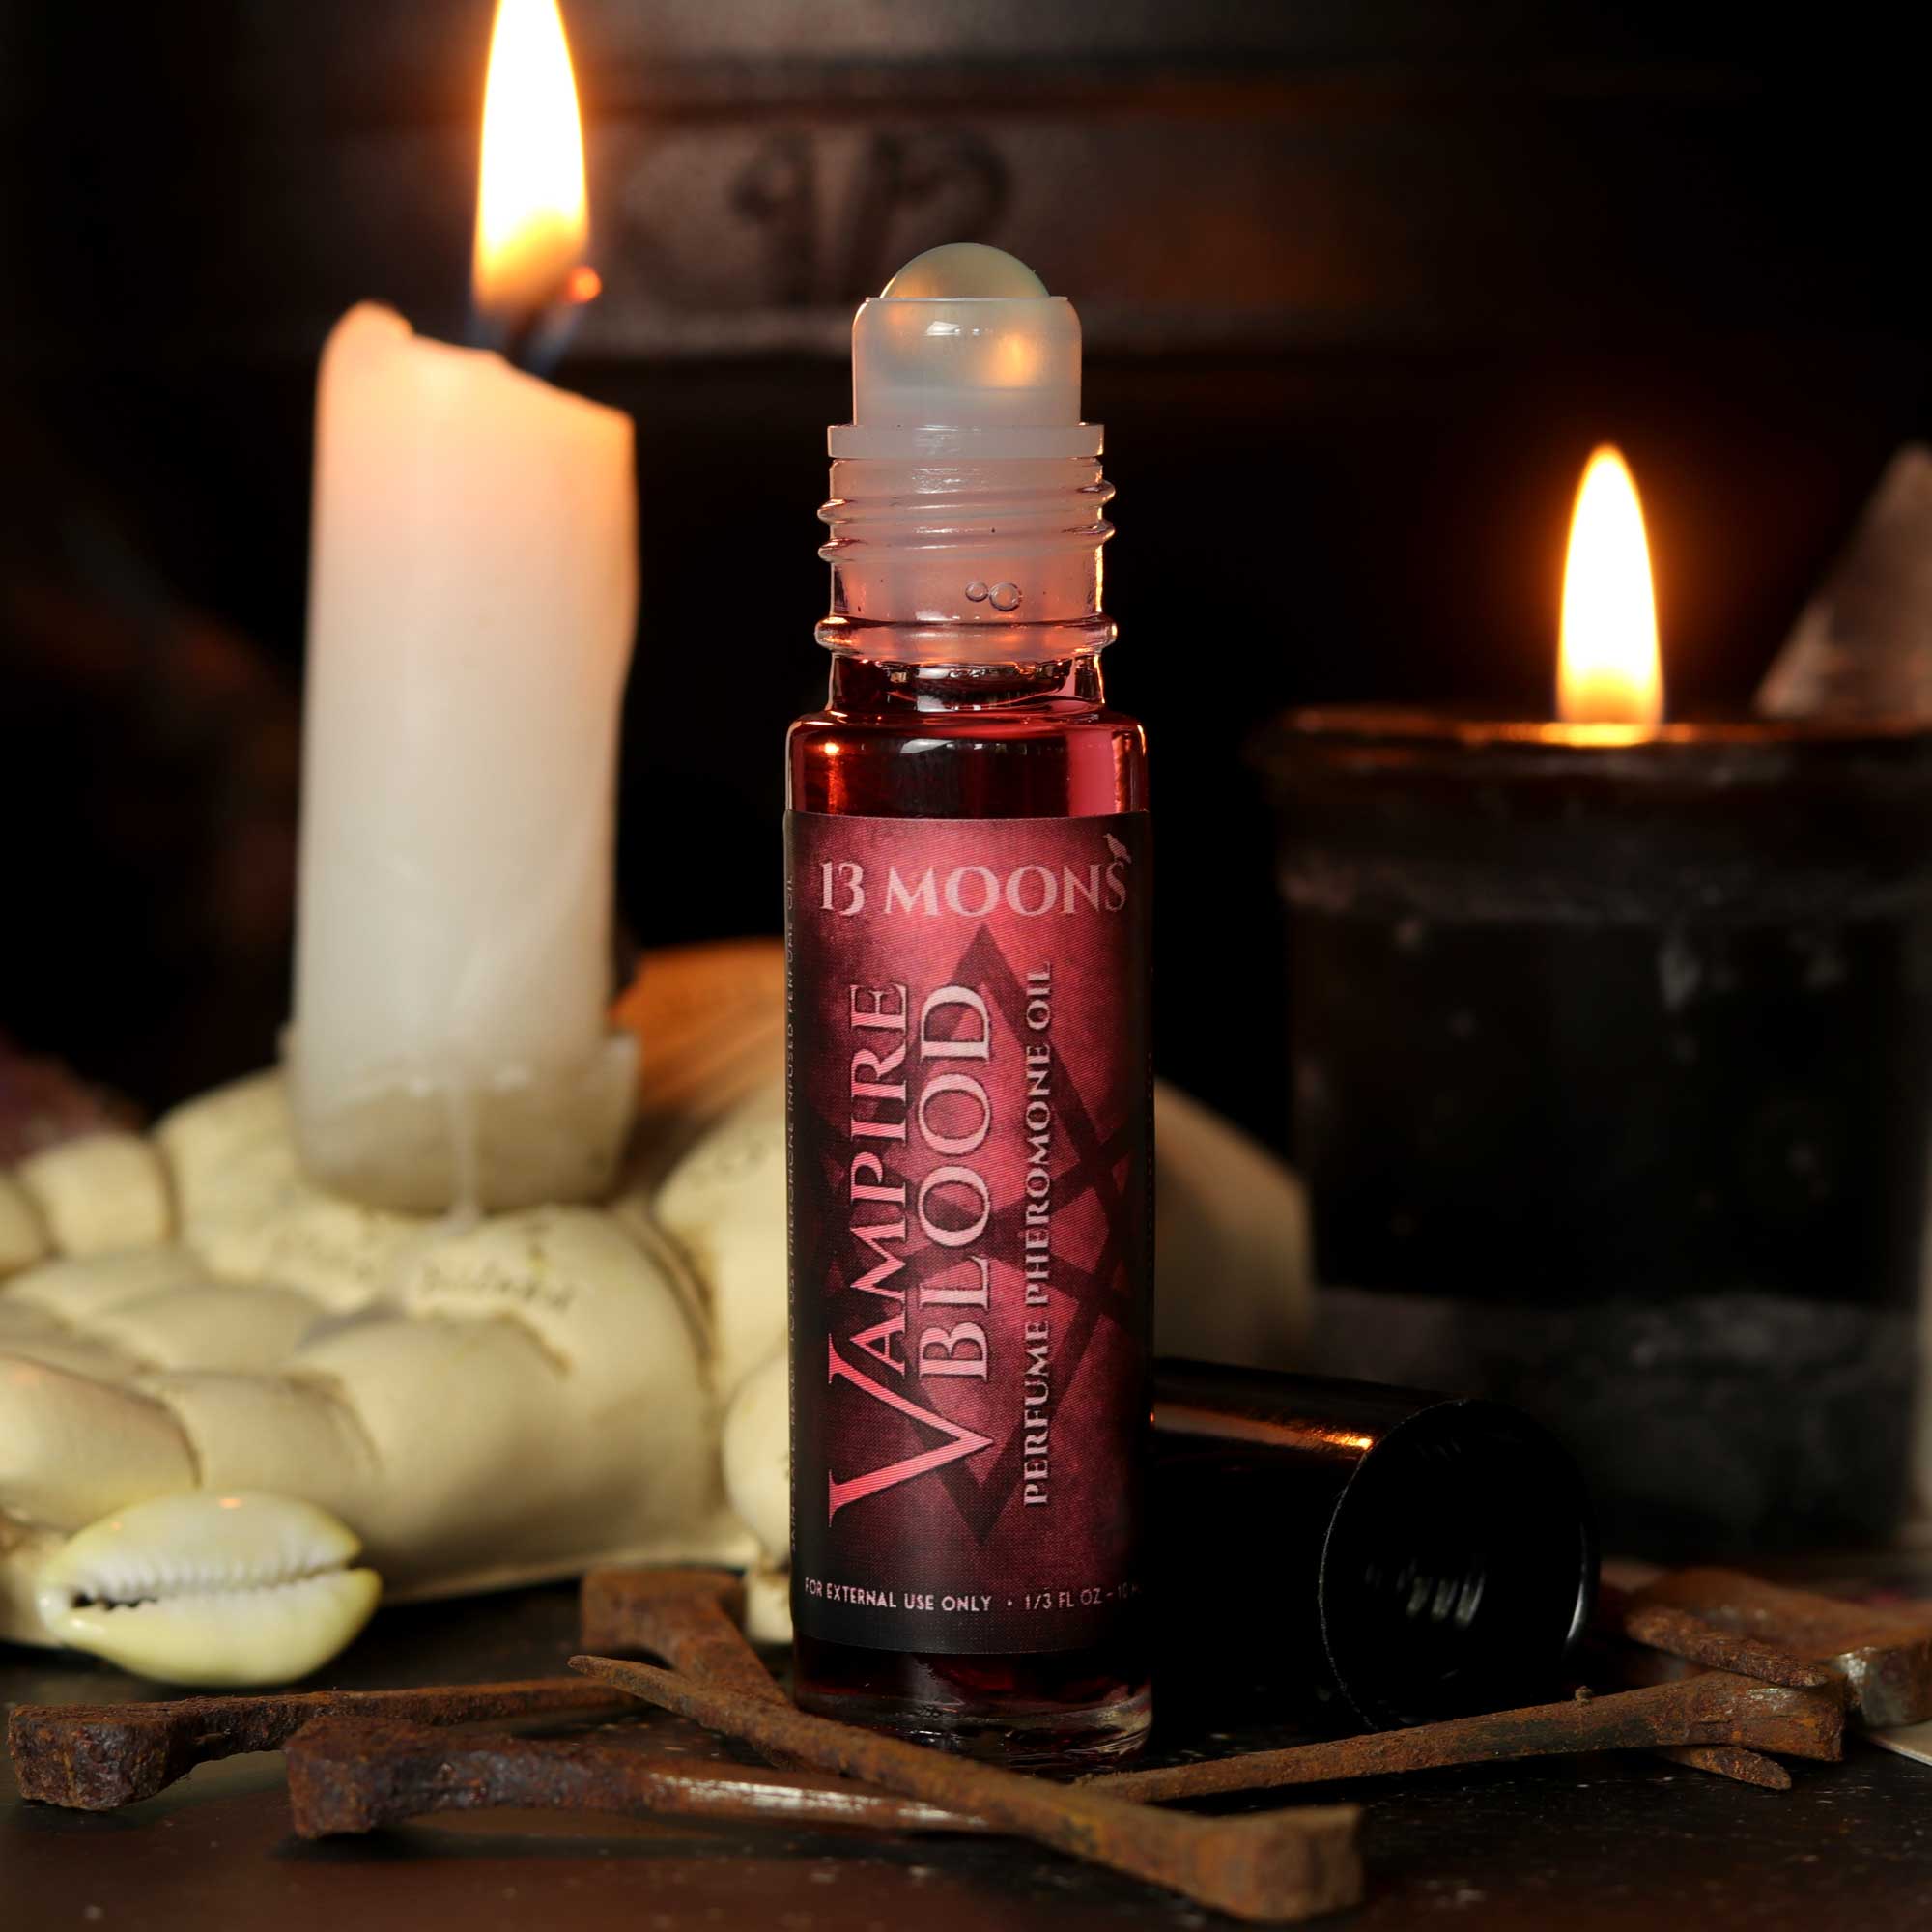 Vampire Blood Pheromone Infused Perfume Roll-on Oil - 13 Moons